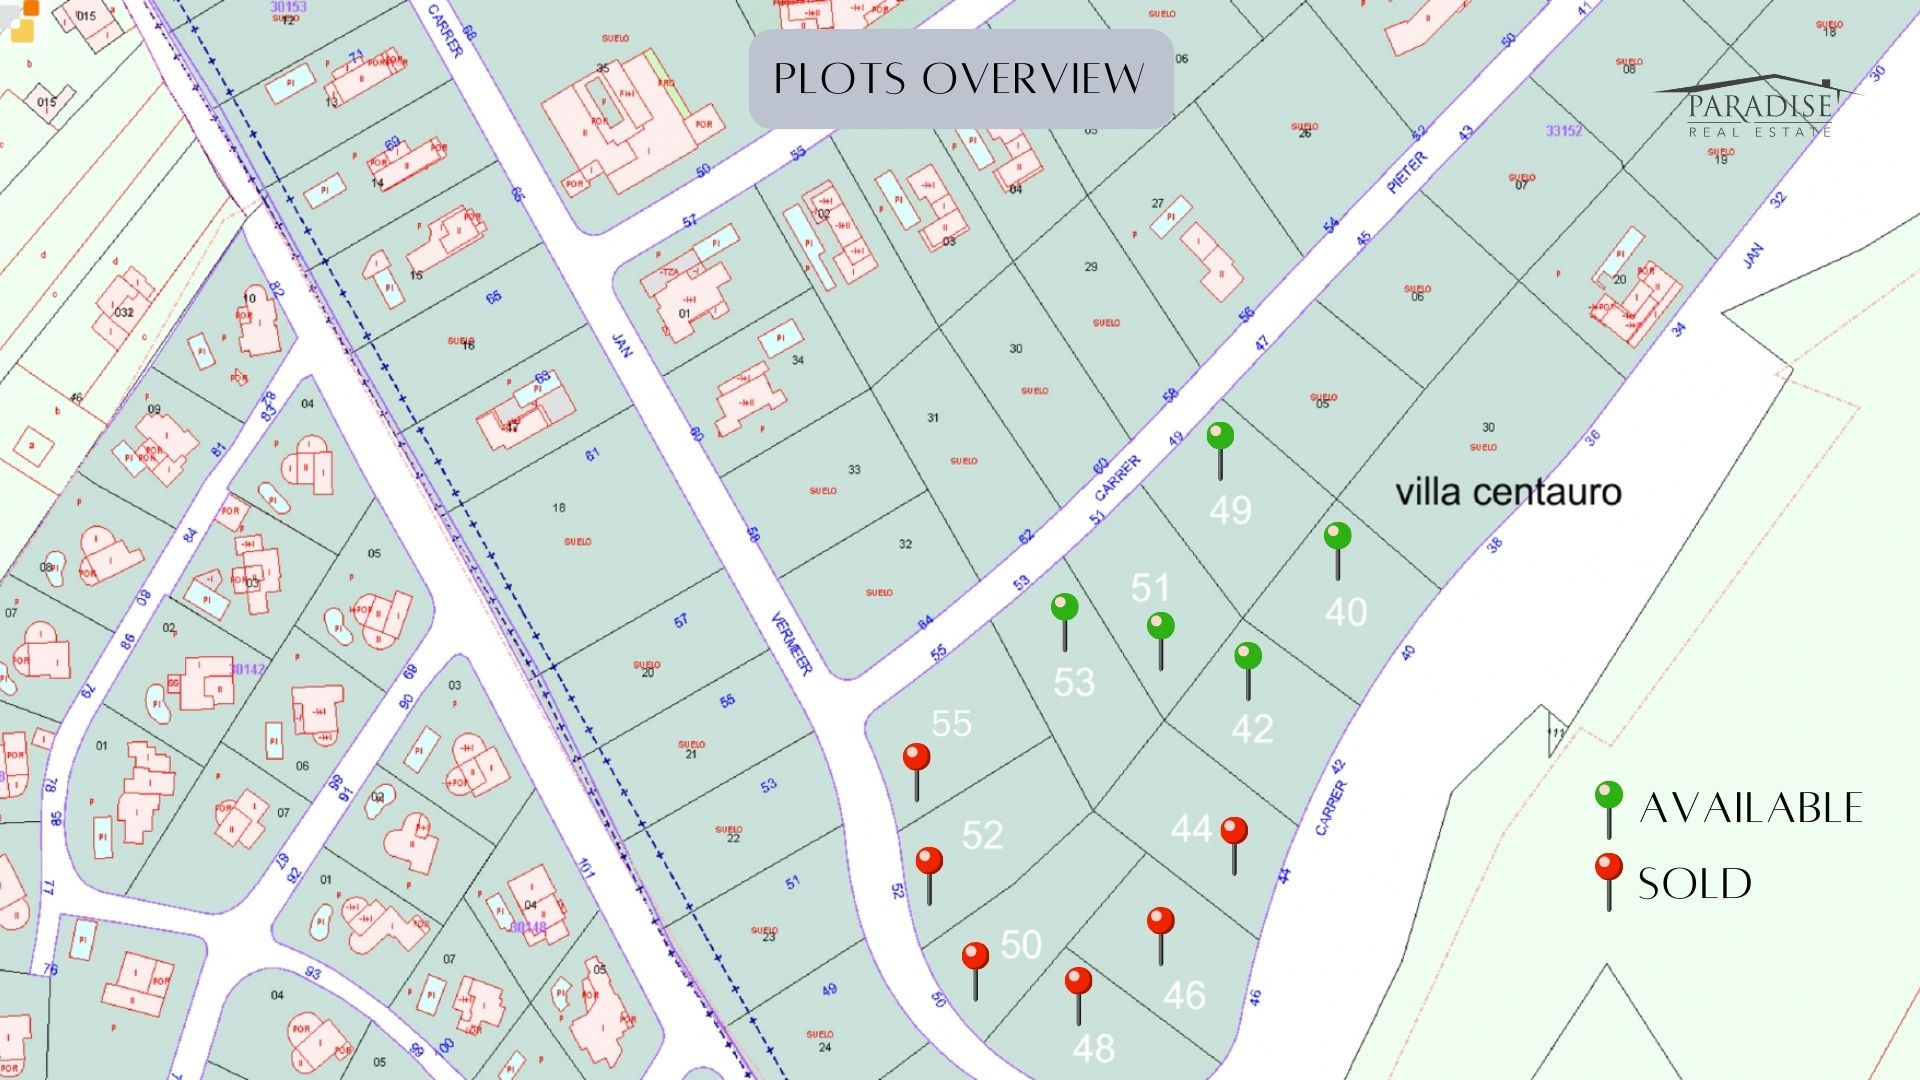 Terrains à bâtir à Monte Olimpo : personnalisez la maison de vos rêves et investissez dans l’immobilier exclusif 0Prix à partir de 525 k€ - 730 €